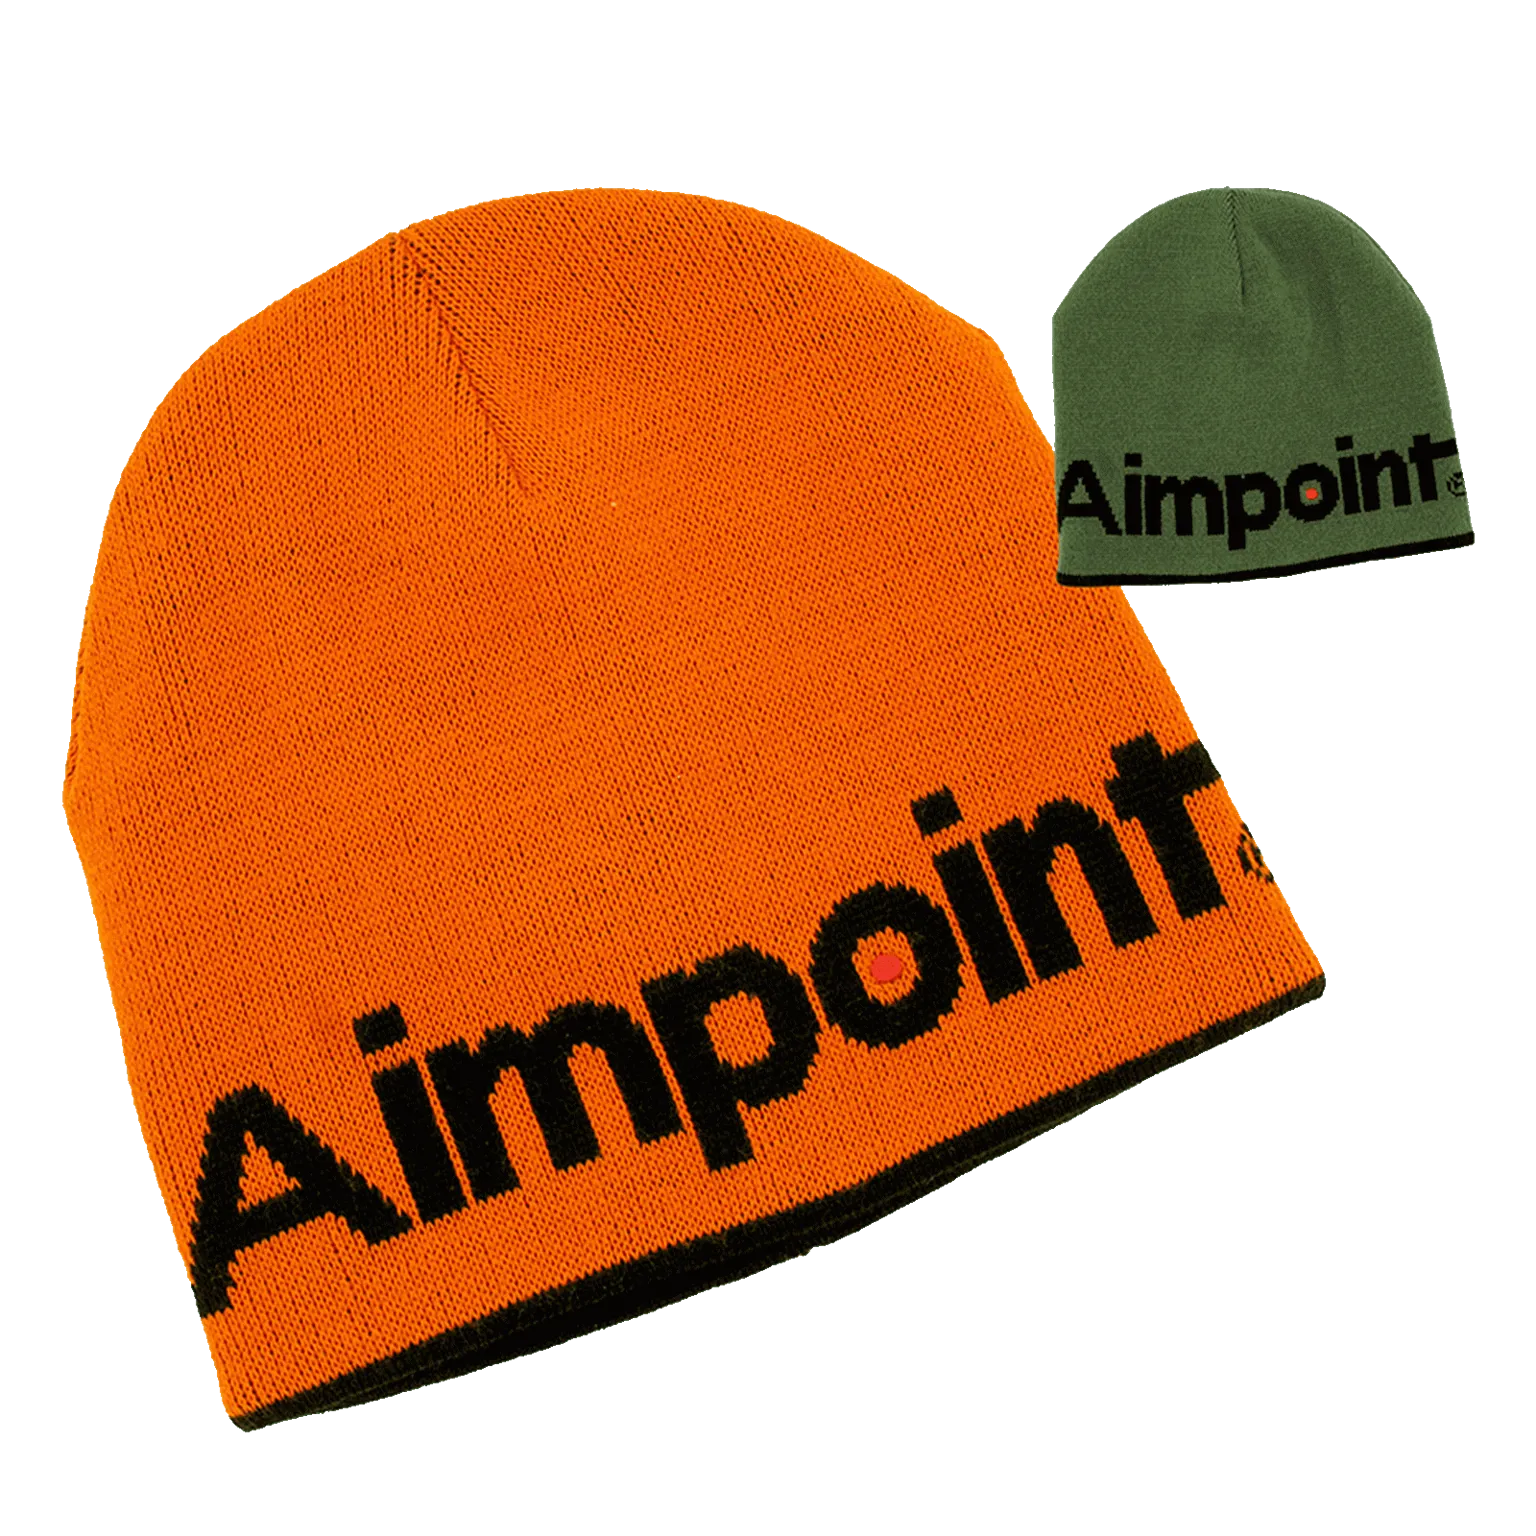 Chapeau Aimpoint® - Tricoté Réversible,
bonnet chaud orange et vert  - 5